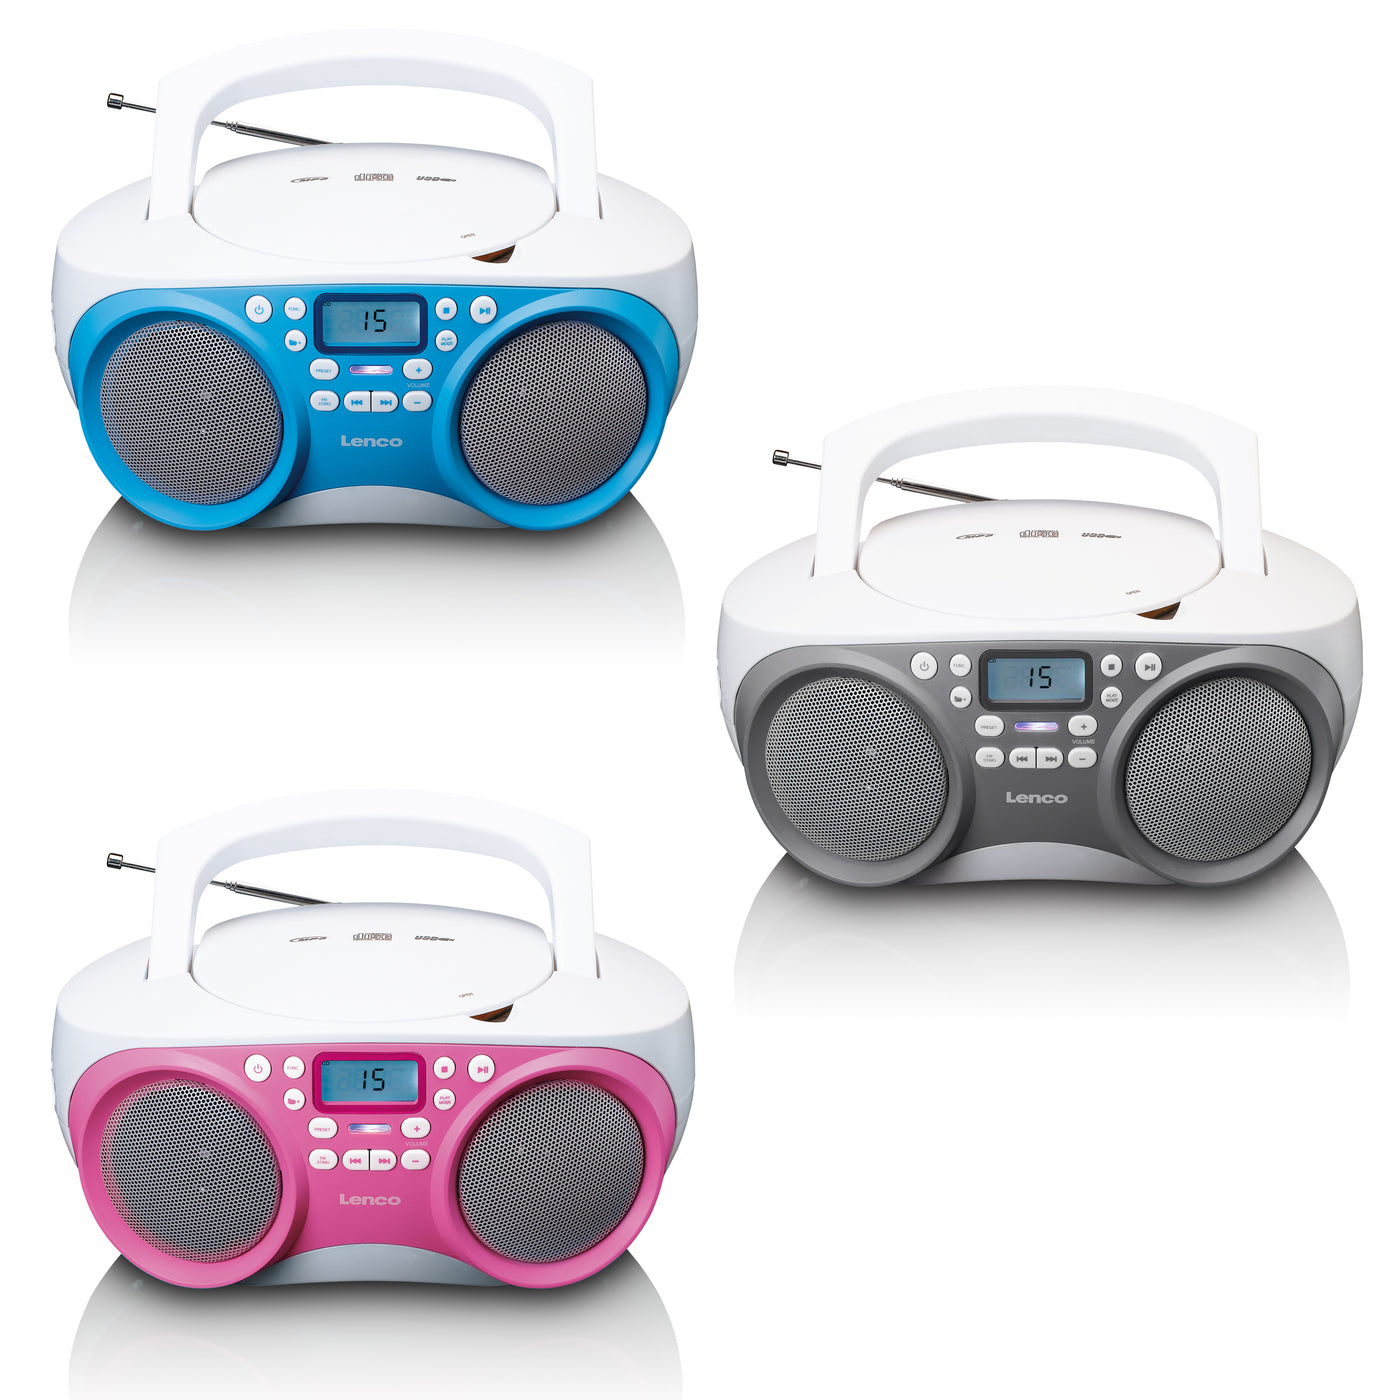 Lenco SCD-301BU - Tragbares FM-Radio CD/MP3/USB-Player - Blau